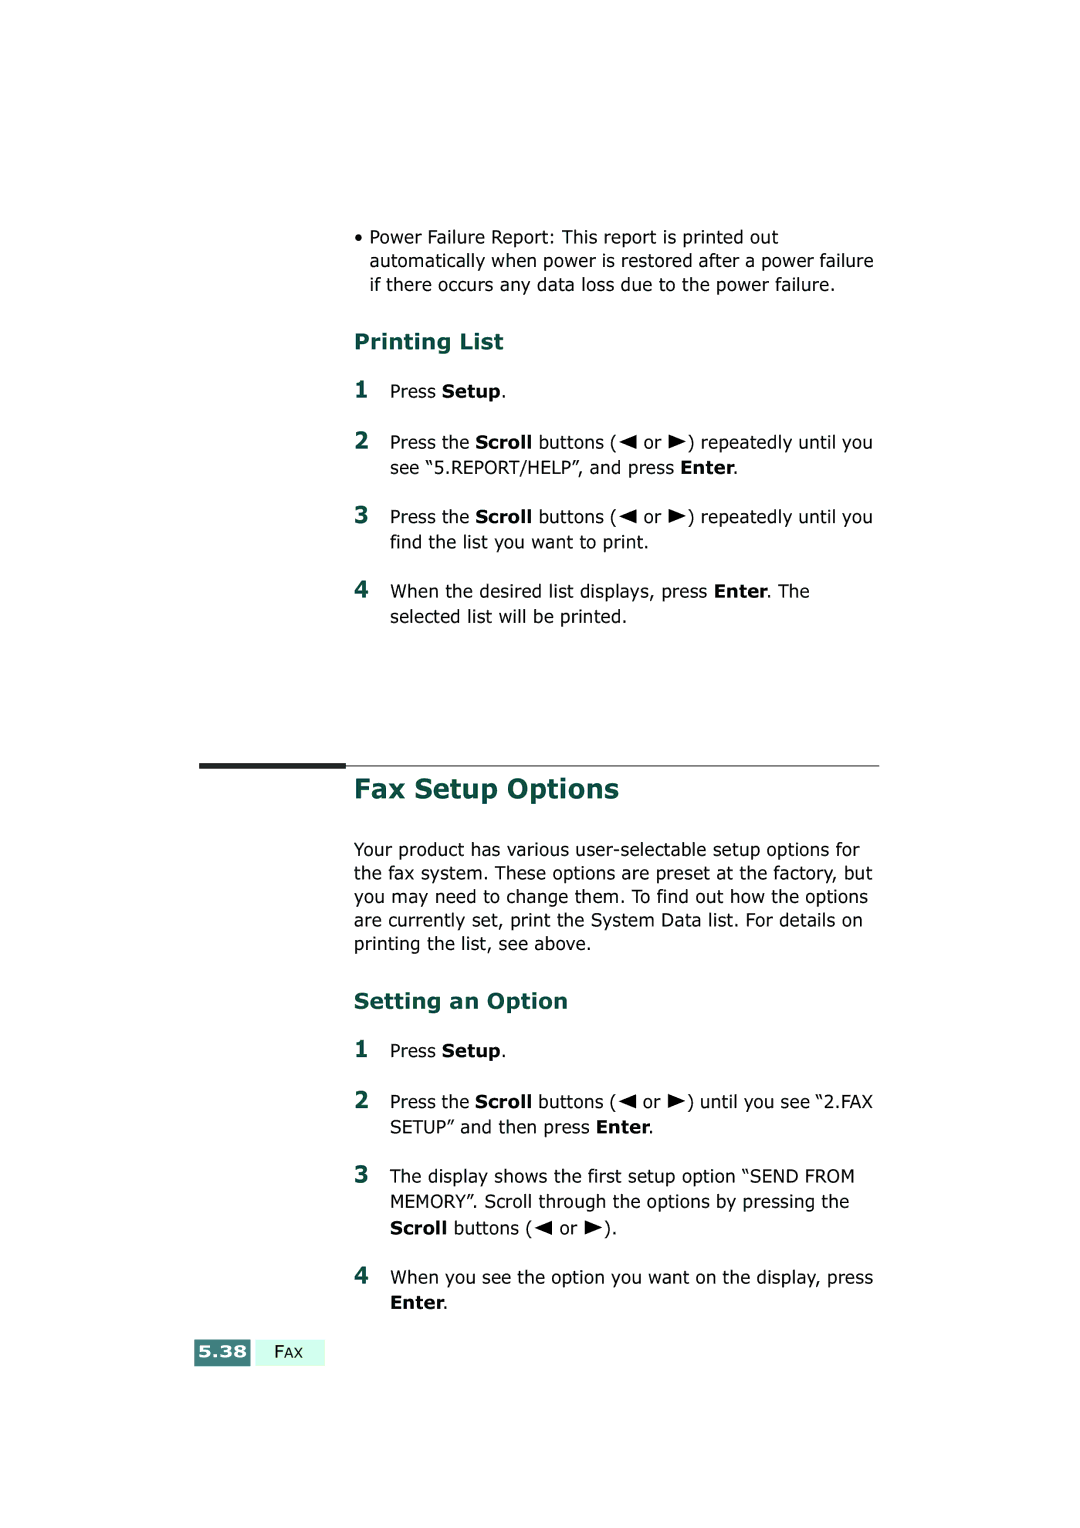 Samsung SF-430 manual Fax Setup Options, Printing List, Setting an Option 